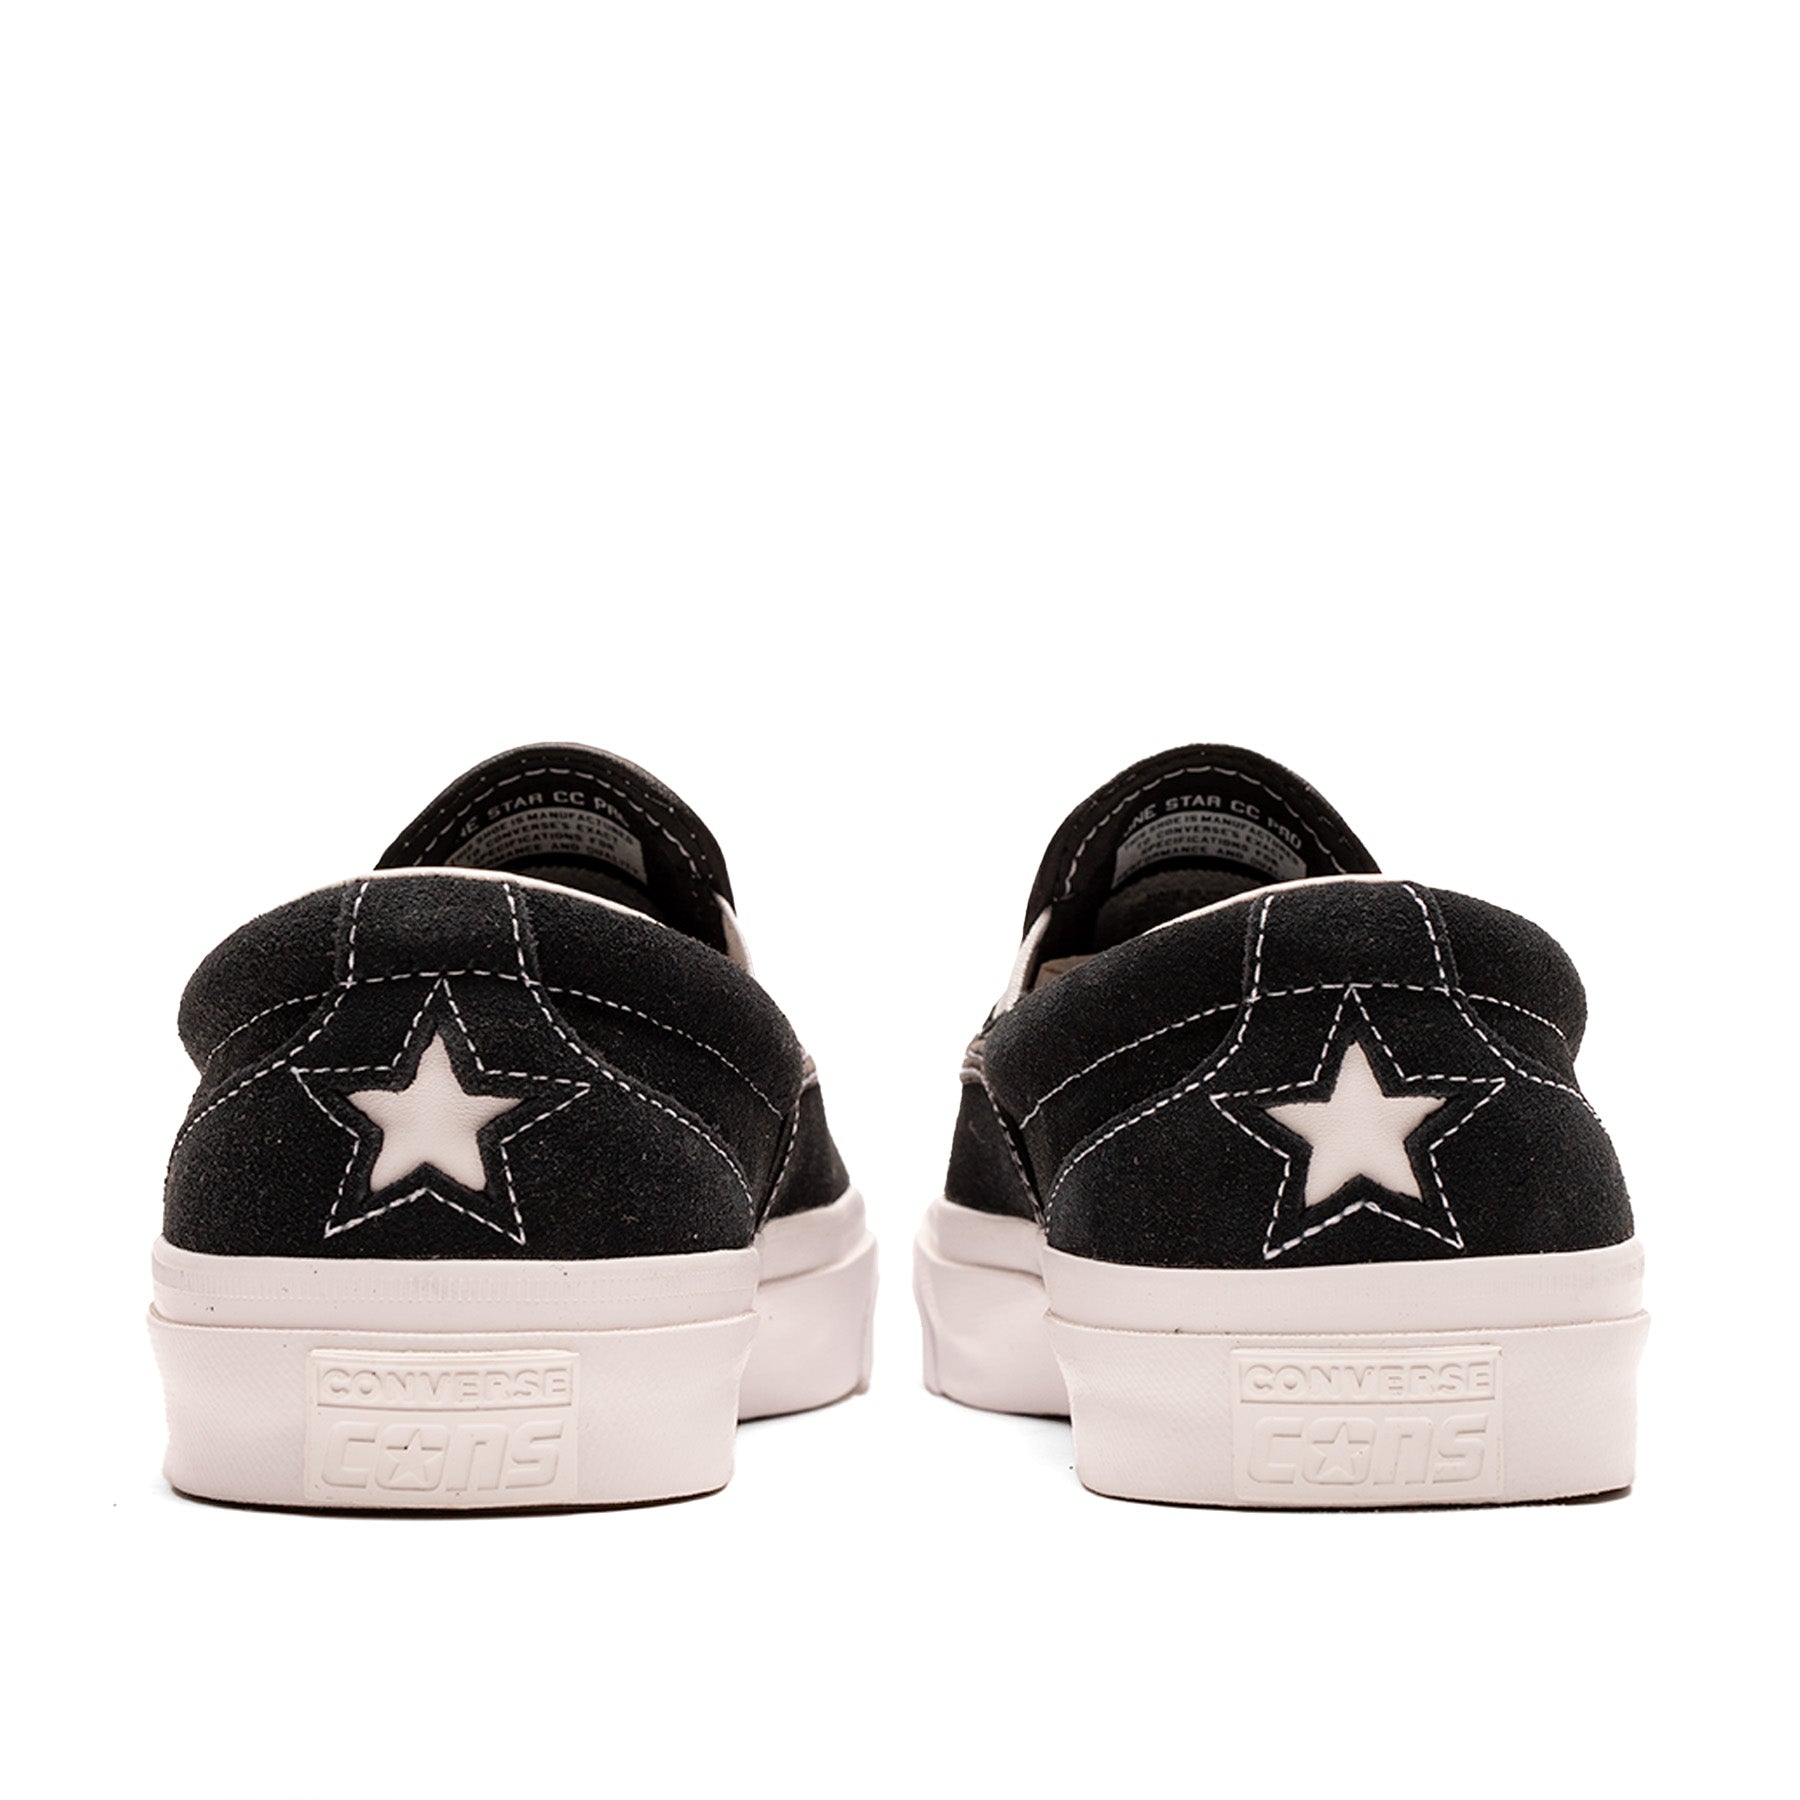 Converse - One Star CC Slip Pro - Black/White/White - KCDC Skateshop